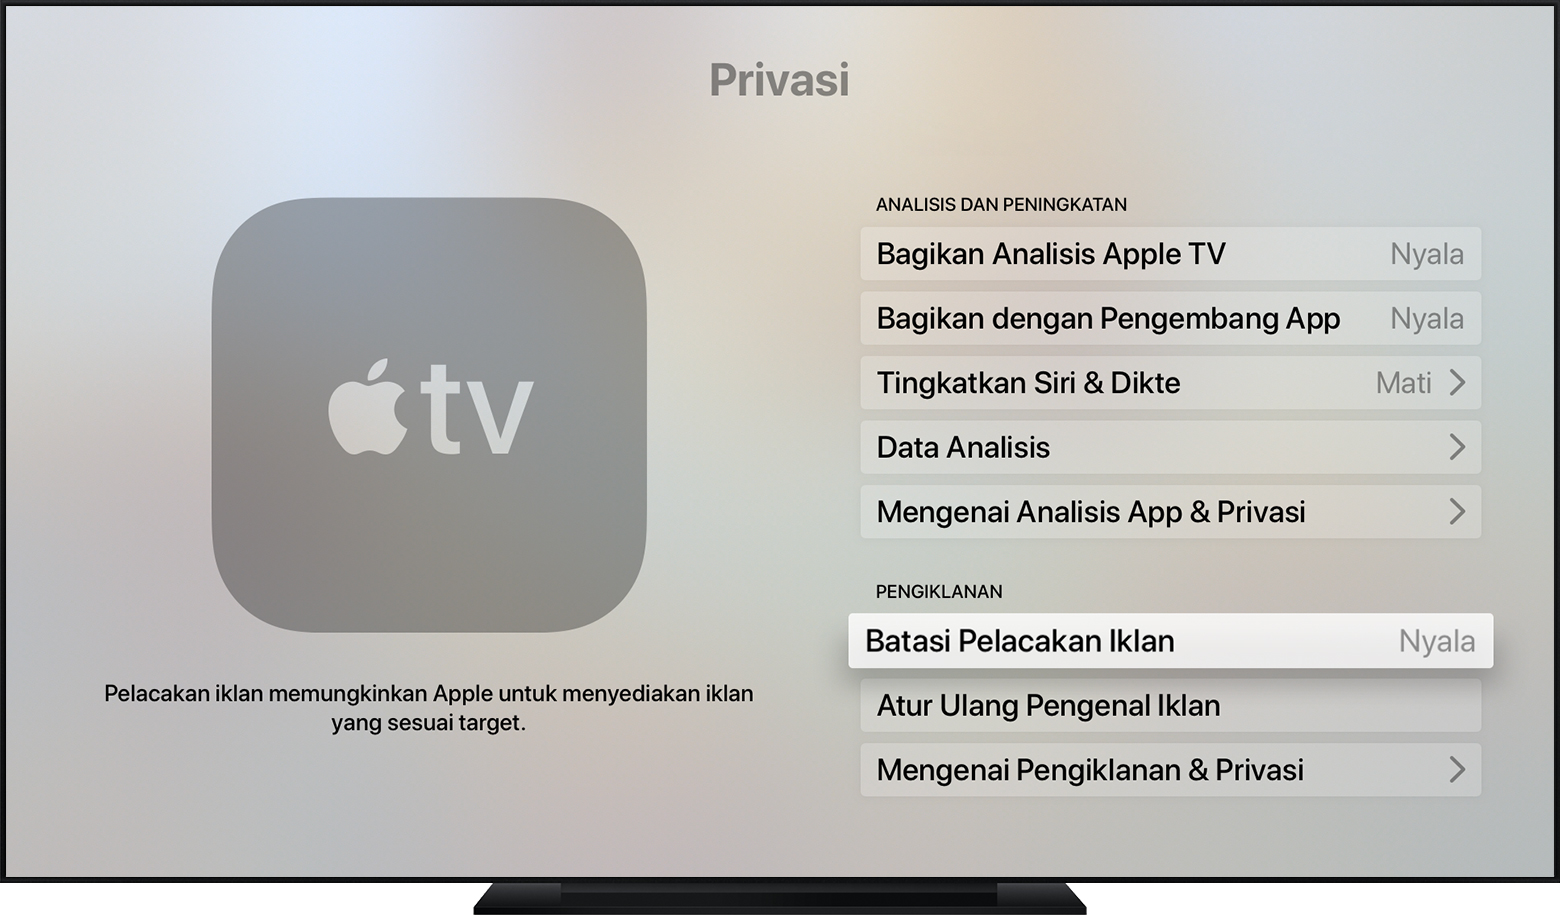 Как удалить фото apple tv